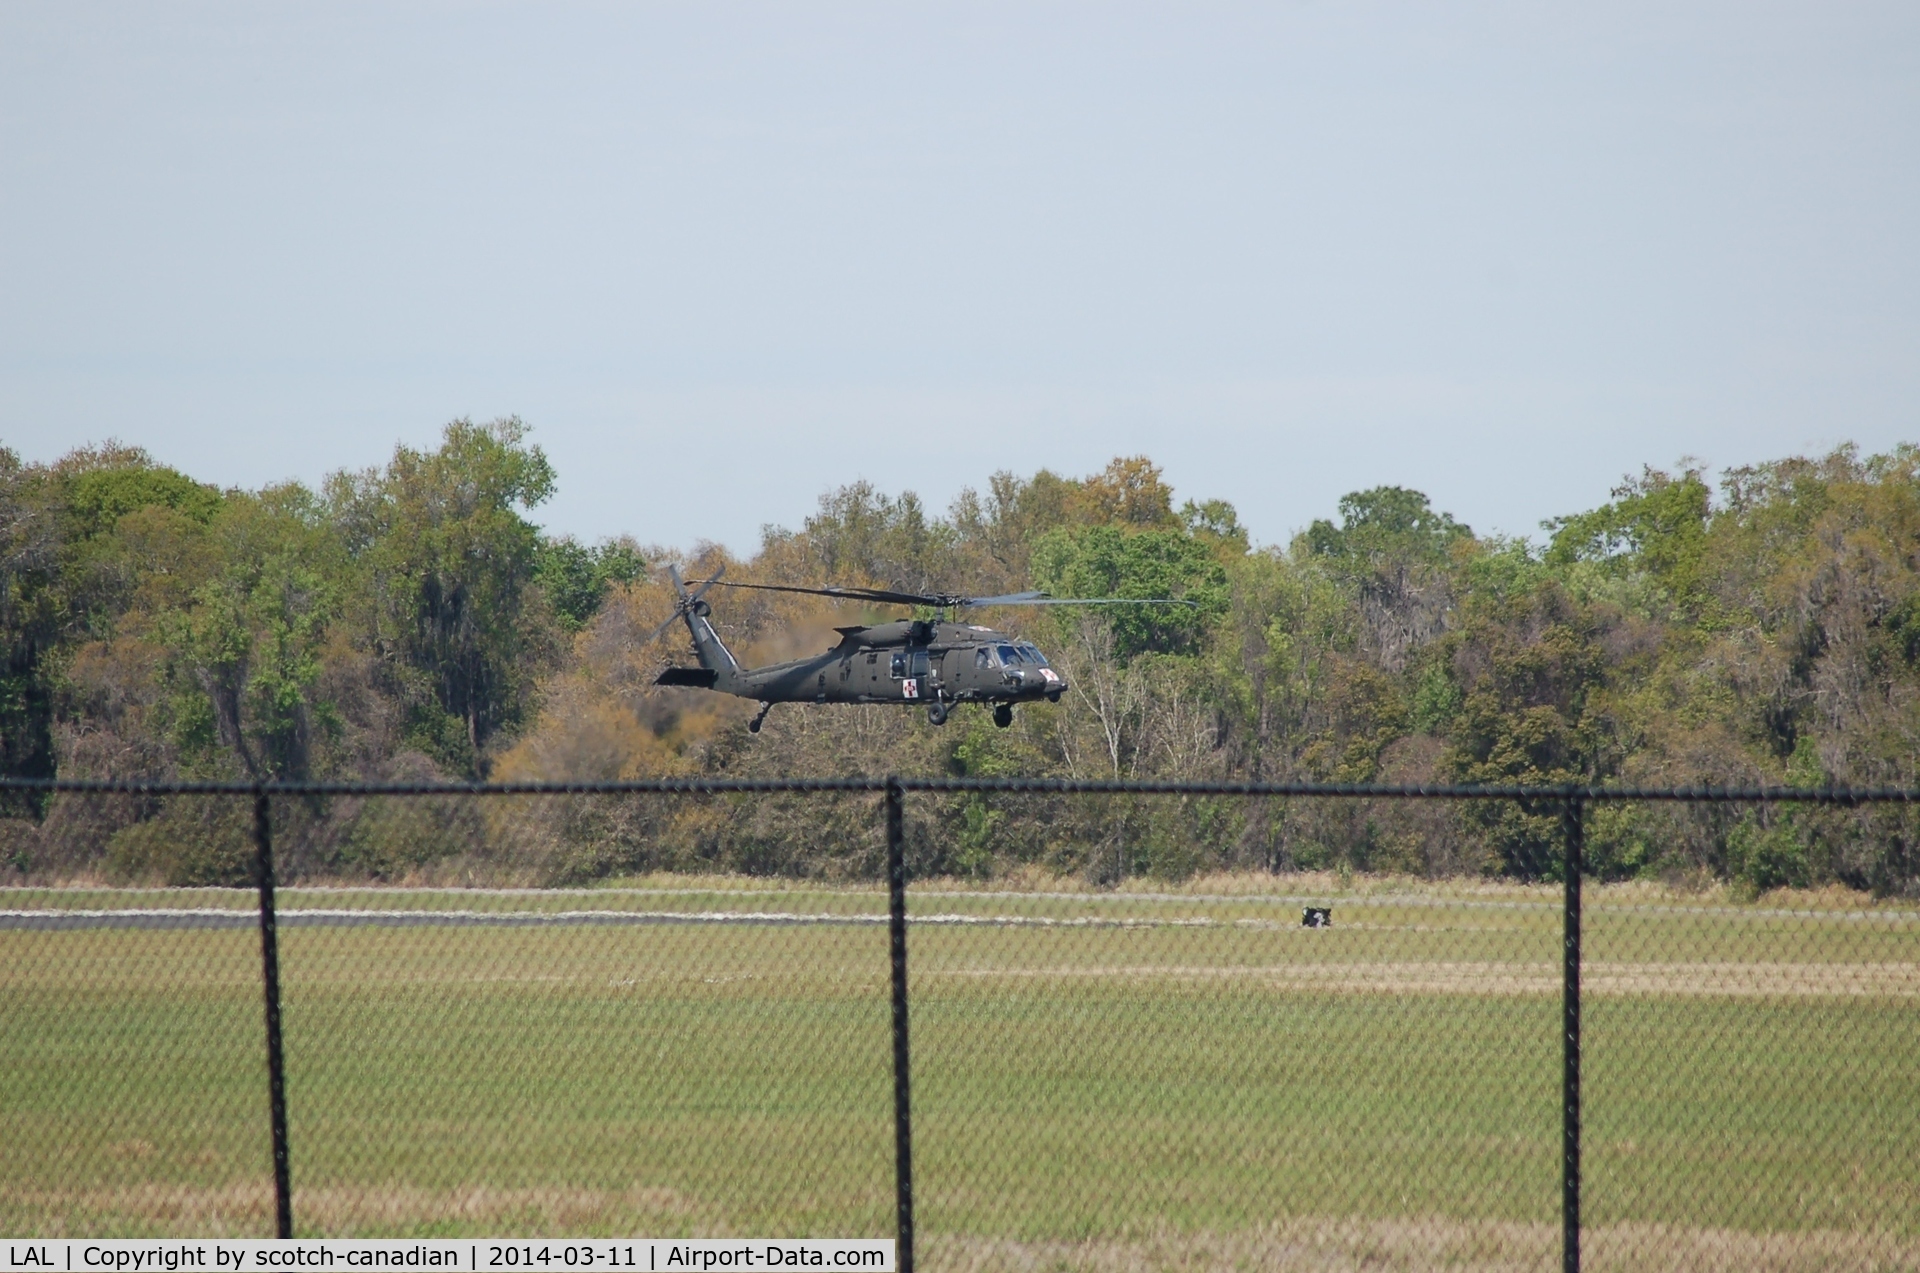 Lakeland Linder Regional Airport (LAL) - UH-60 Black Hawk Helicopter at Lakeland Linder Regional Airport, Lakeland, FL